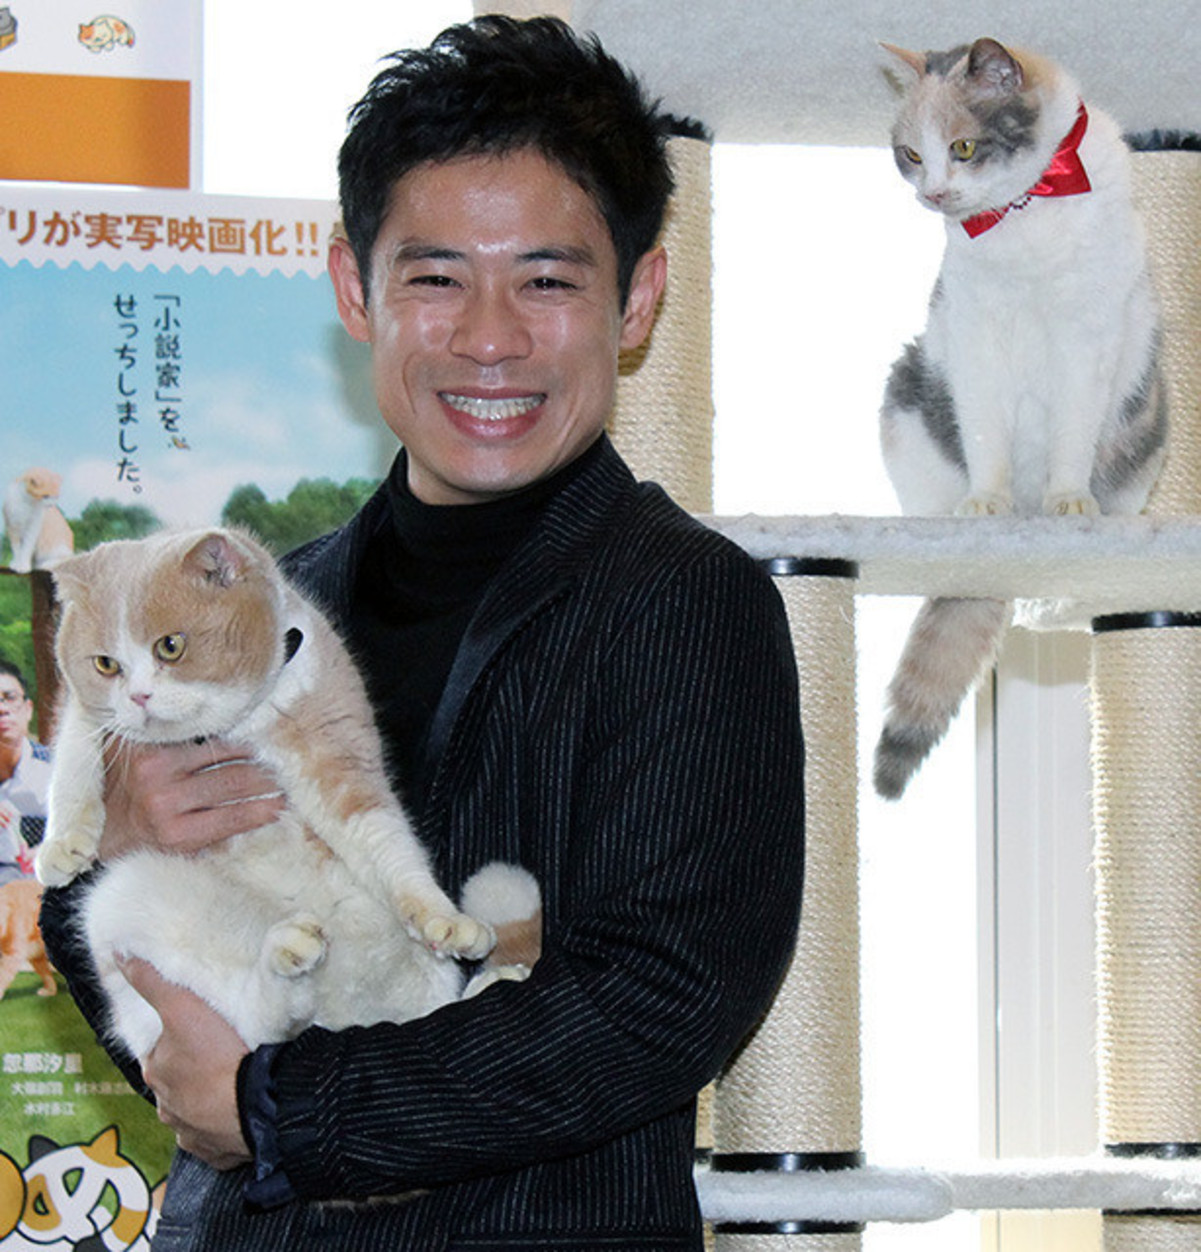 伊藤淳史 愛犬家も主演映画で共演した猫にいやされ ニャンとも言えない感じ 映画ニュース 映画 Com